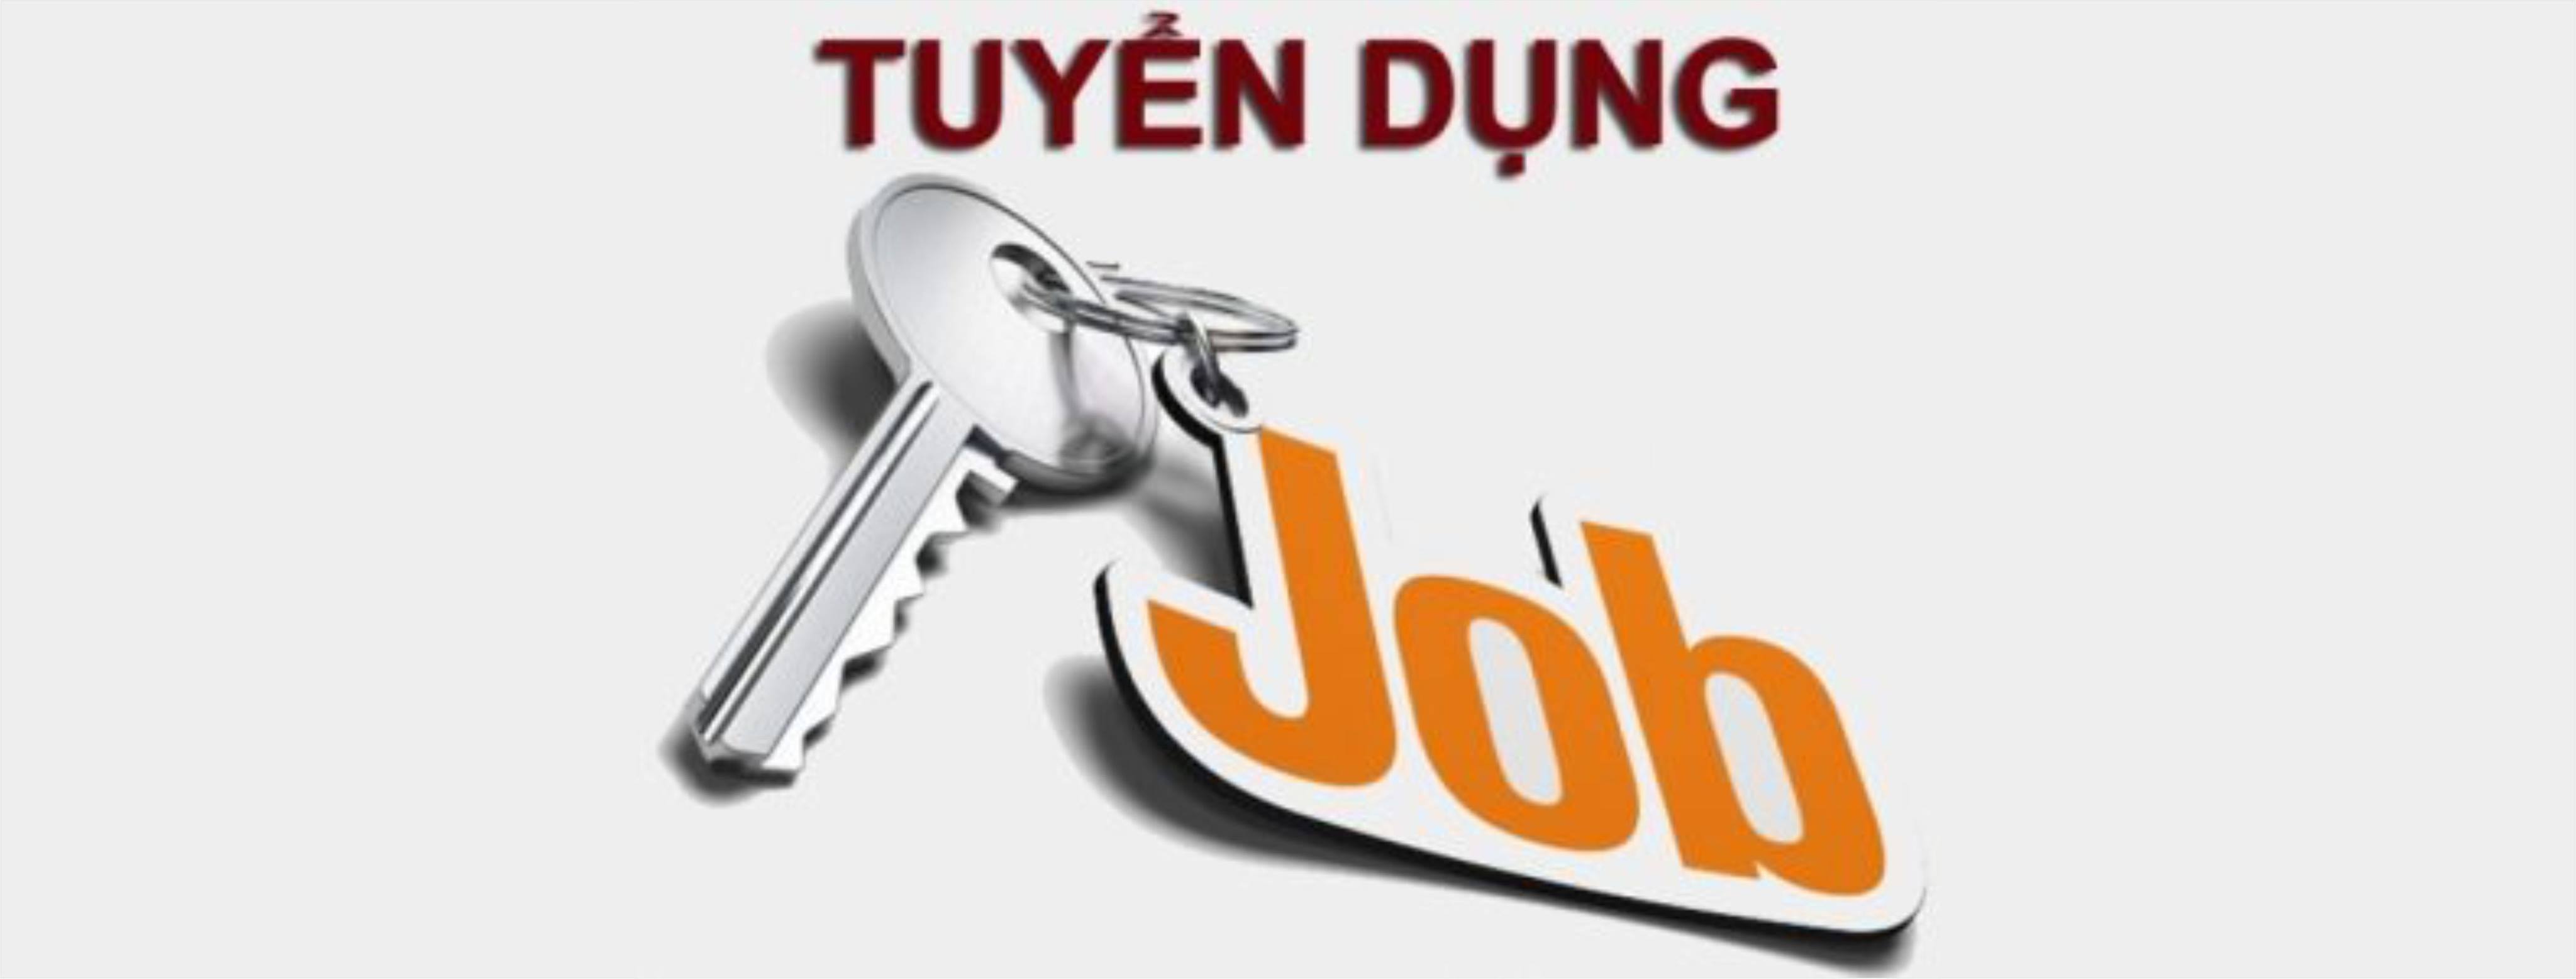 Công ty cổ phần thép Hòa Phát Dung Quất thông báo tuyển dụng lao động